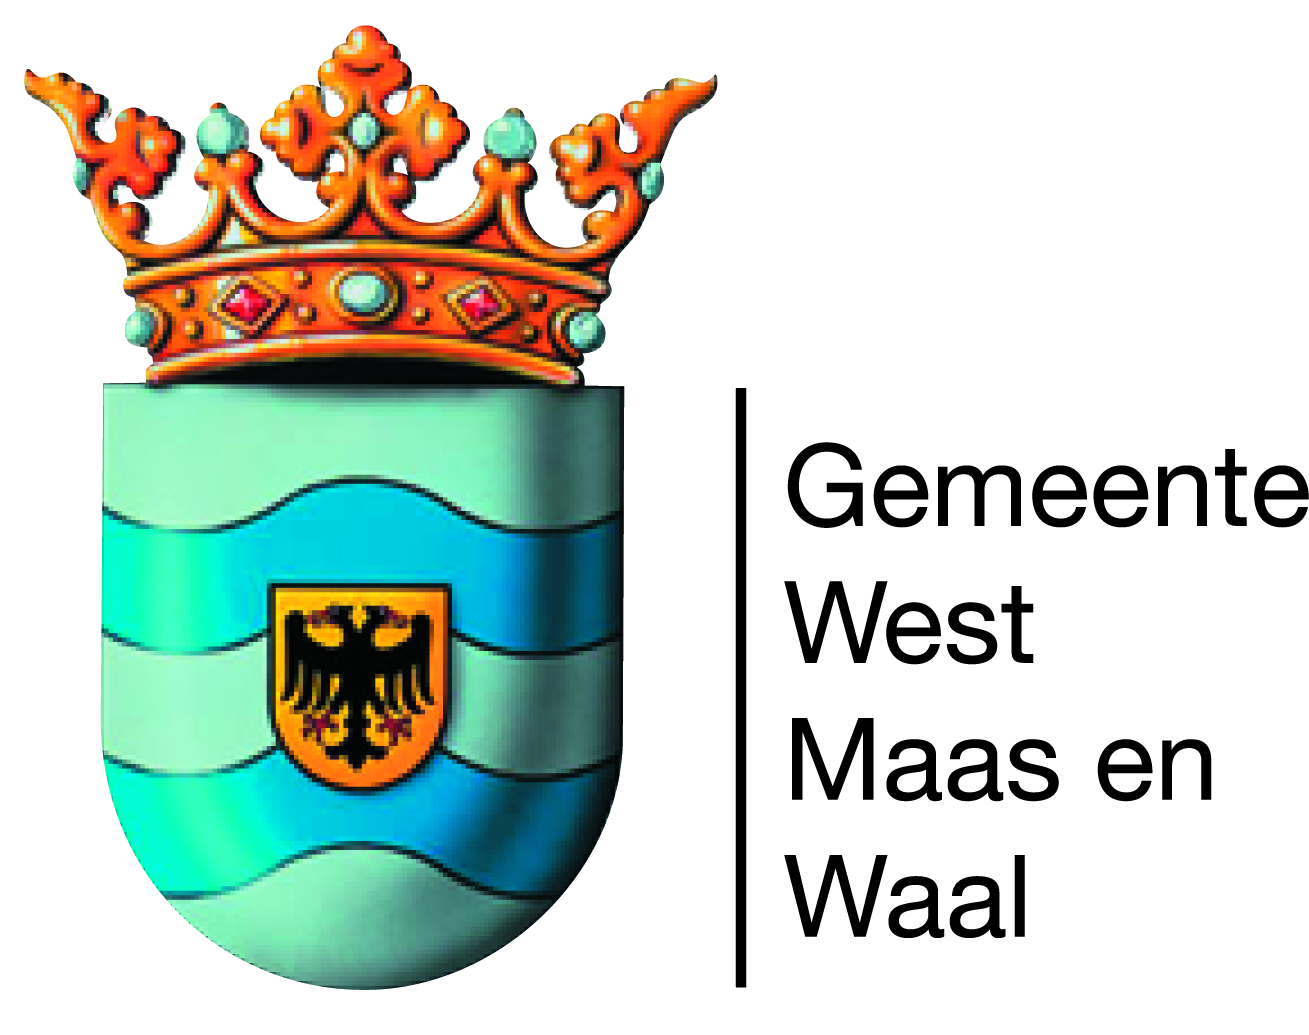 West Maas en Waal